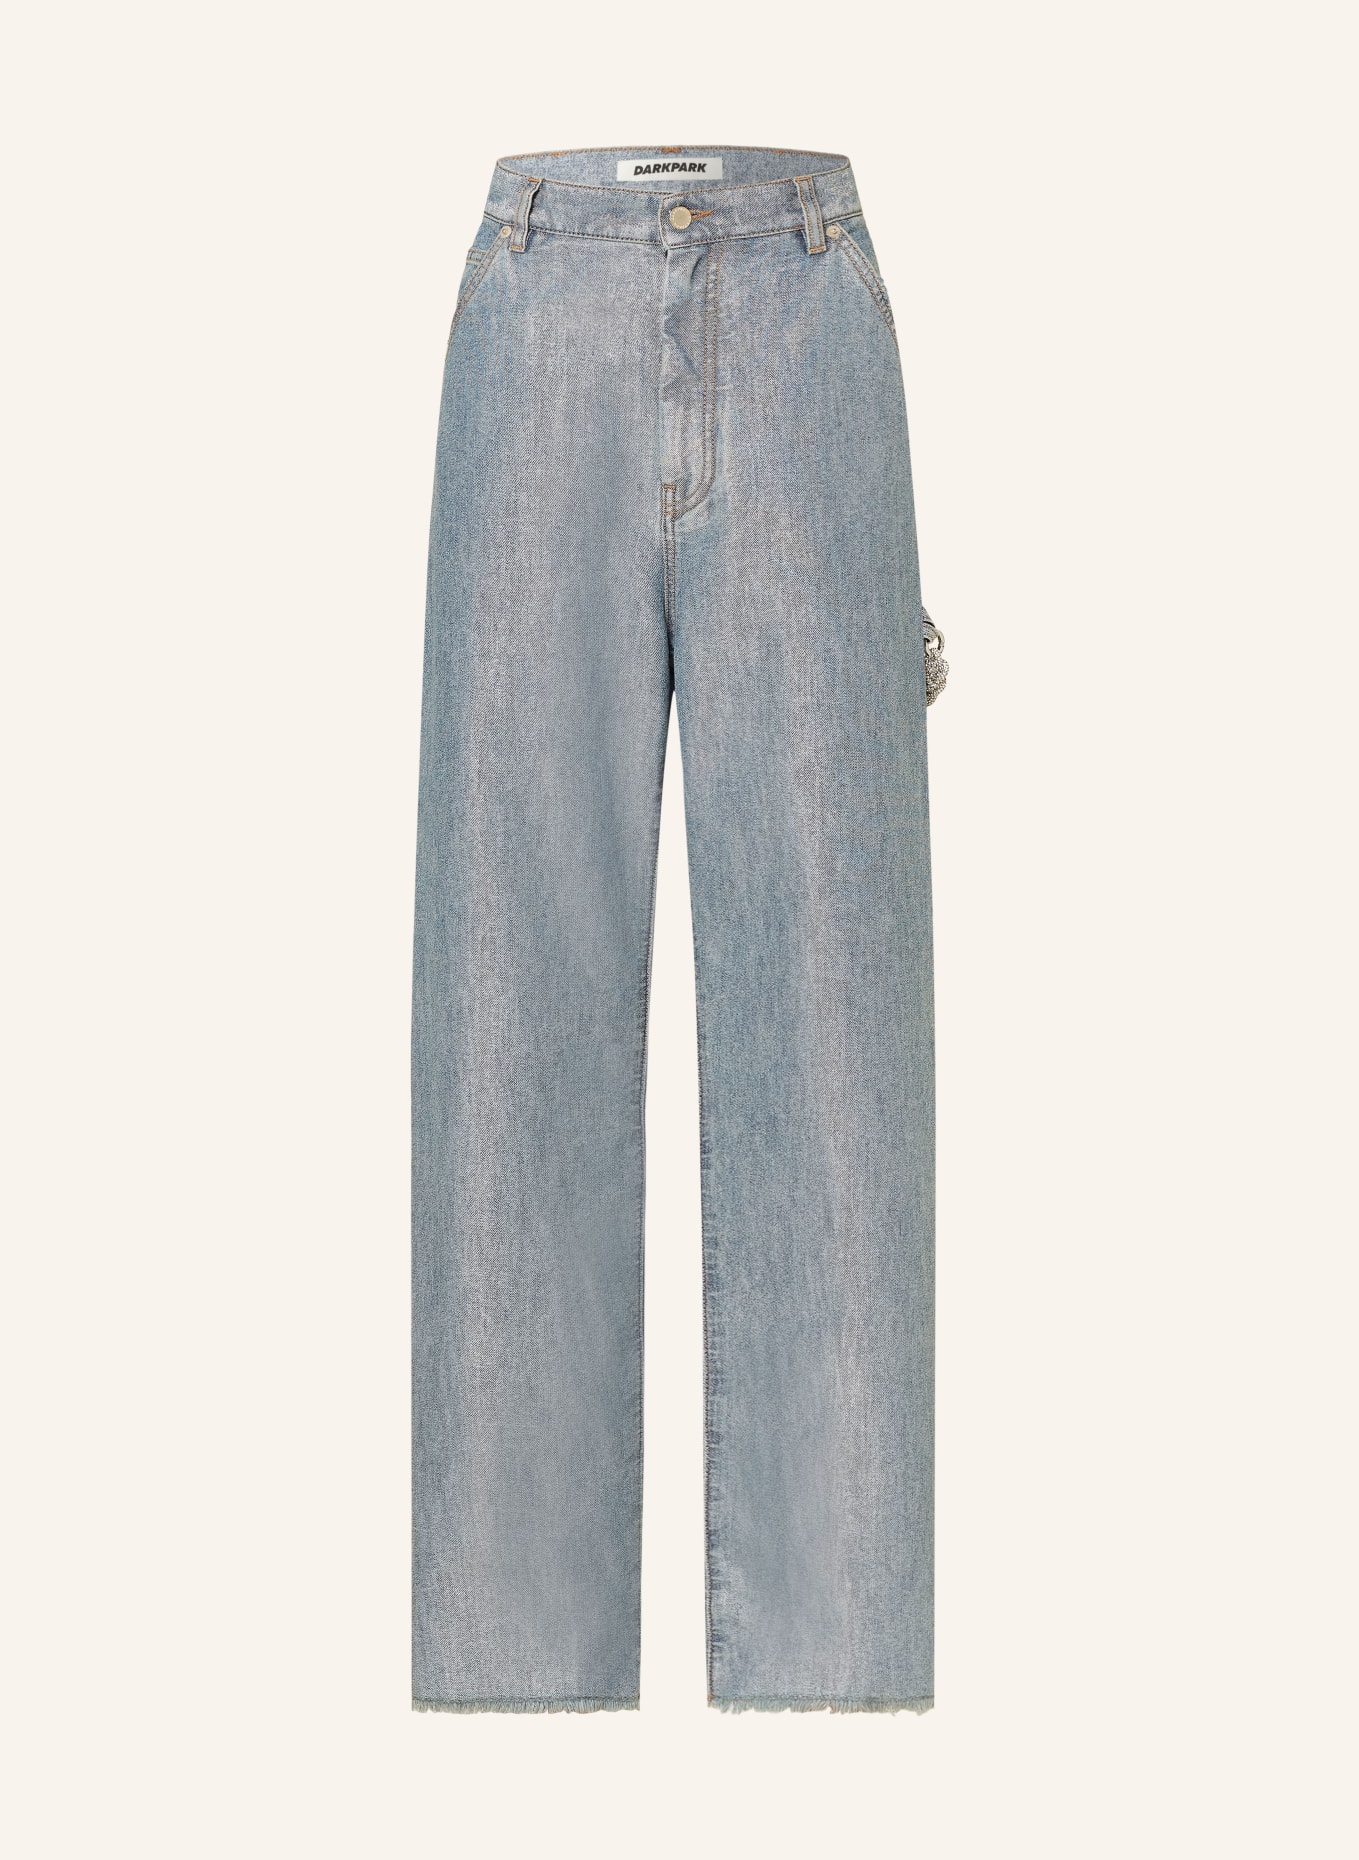 DARKPARK Straight Jeans LISA, Farbe: W051 DENIM LUREX LIGHT WASH (Bild 1)